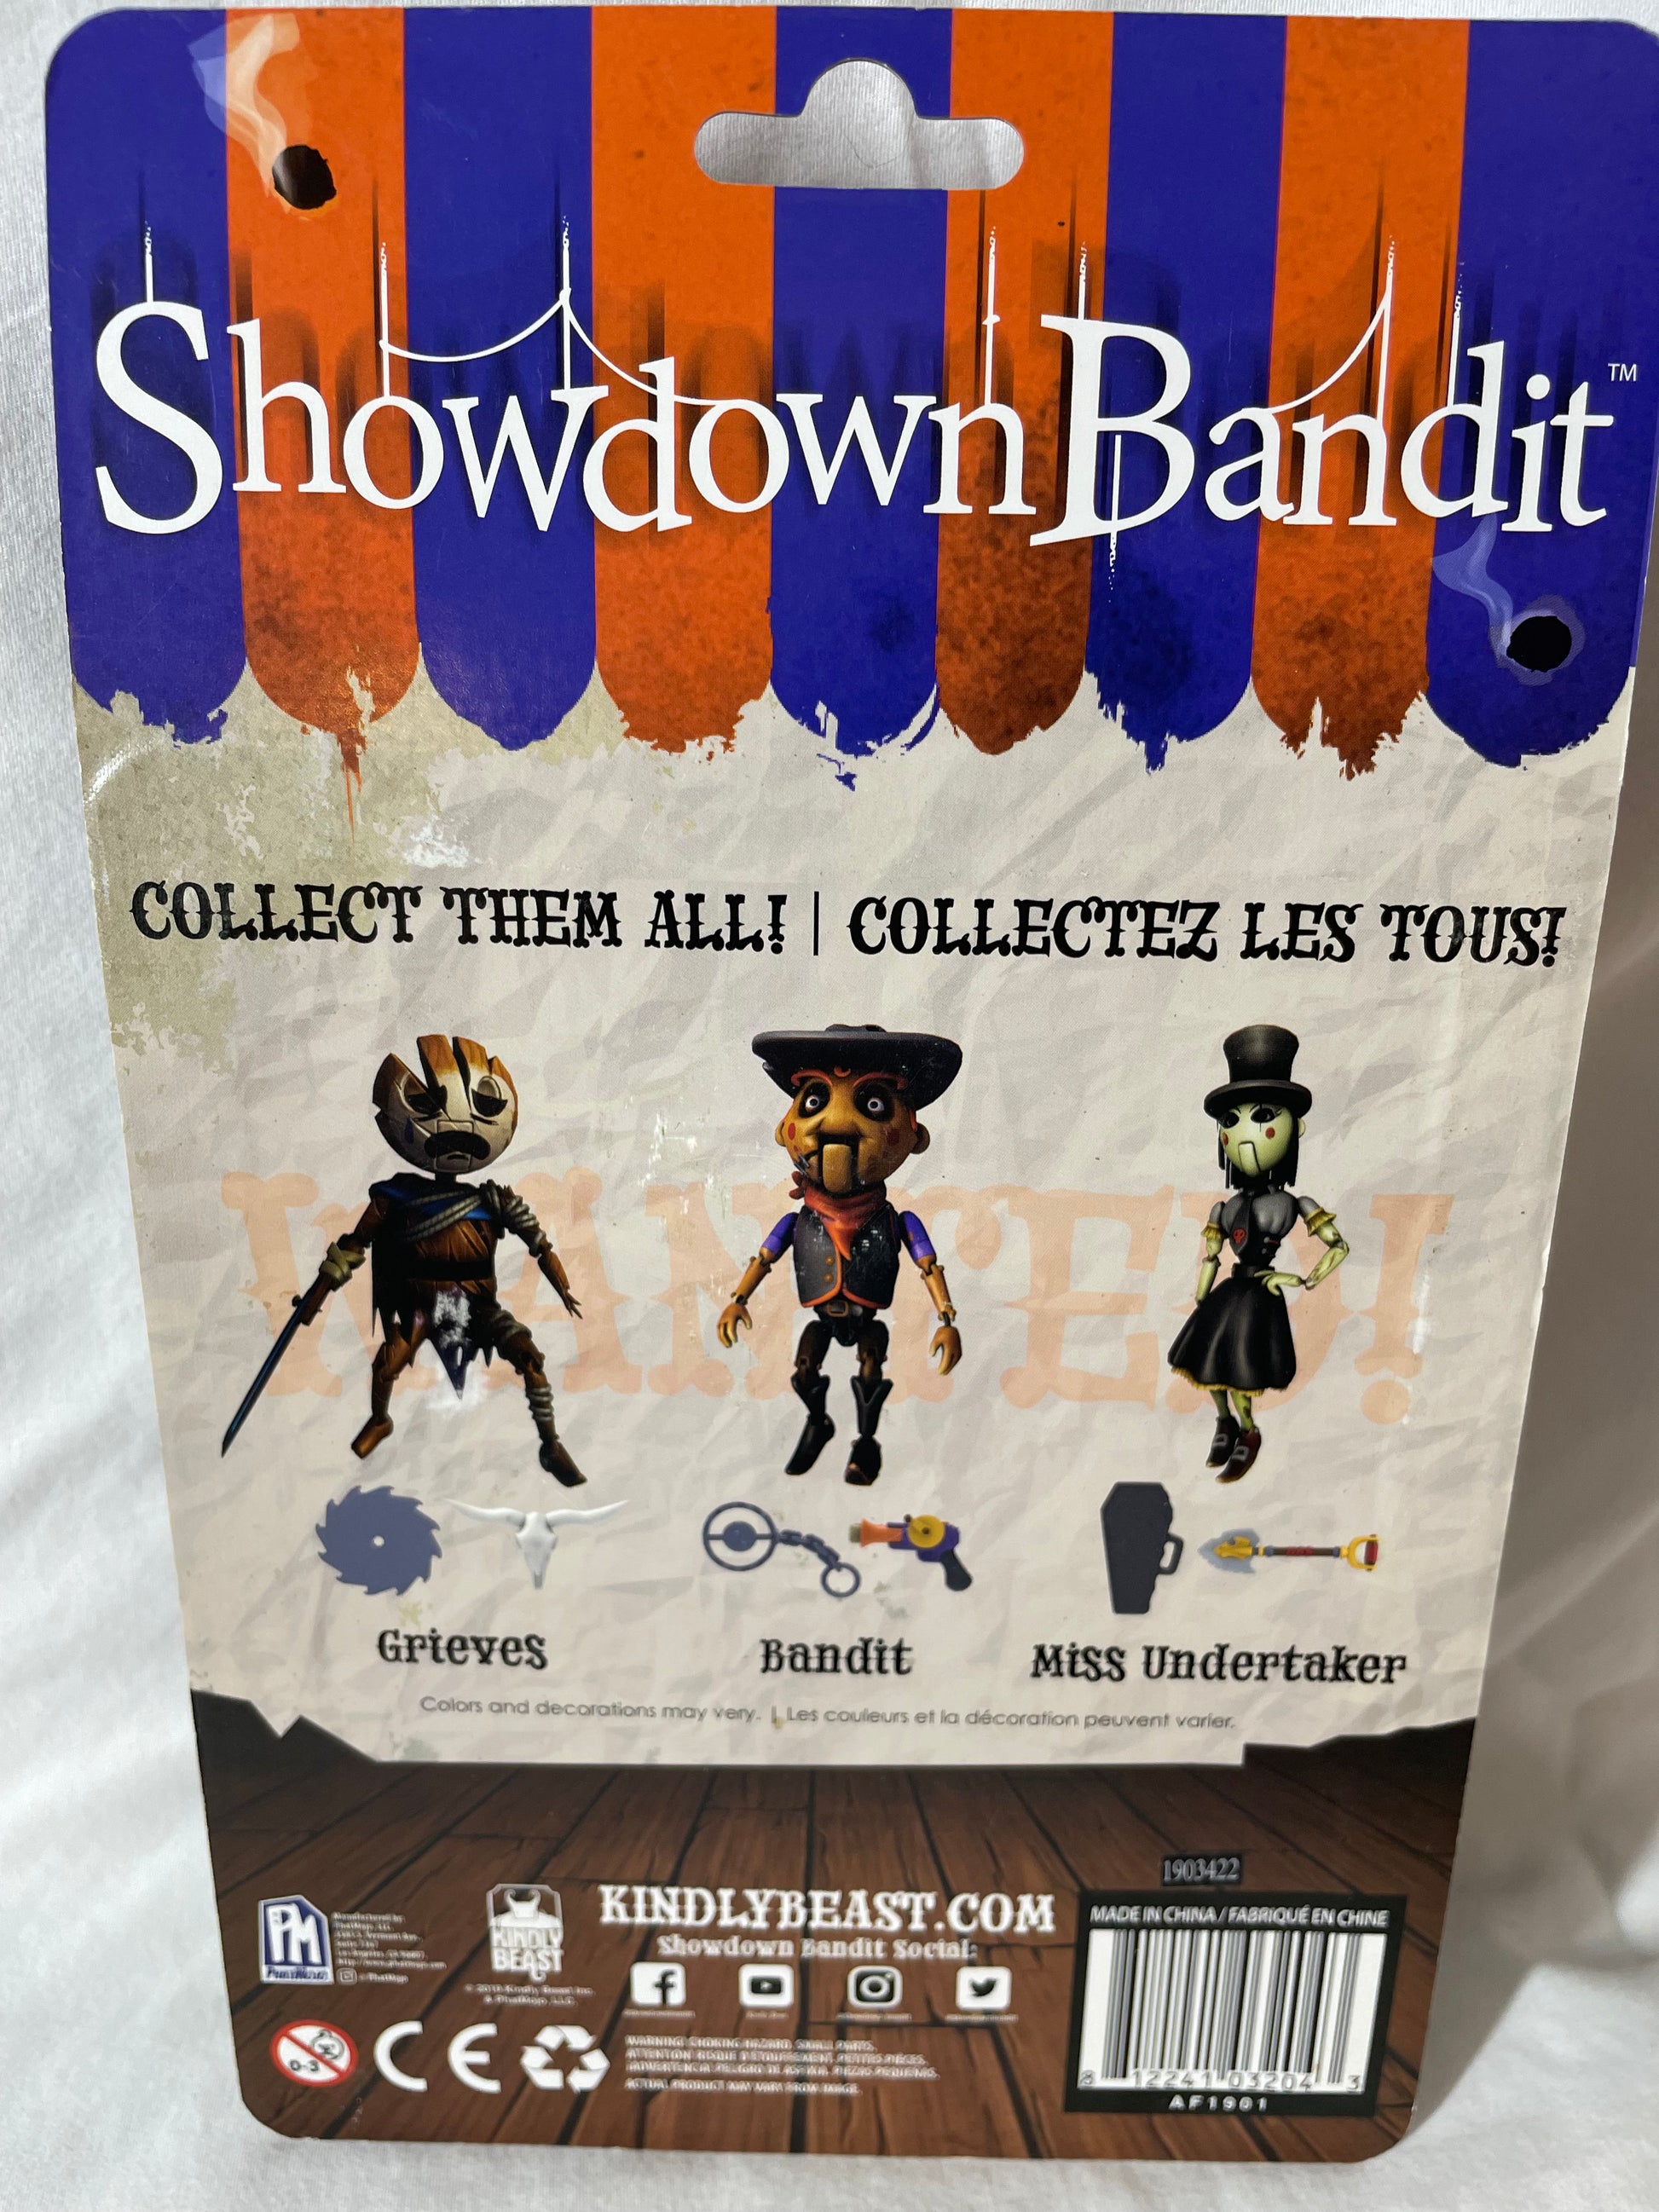 FREE Showdown Bandit